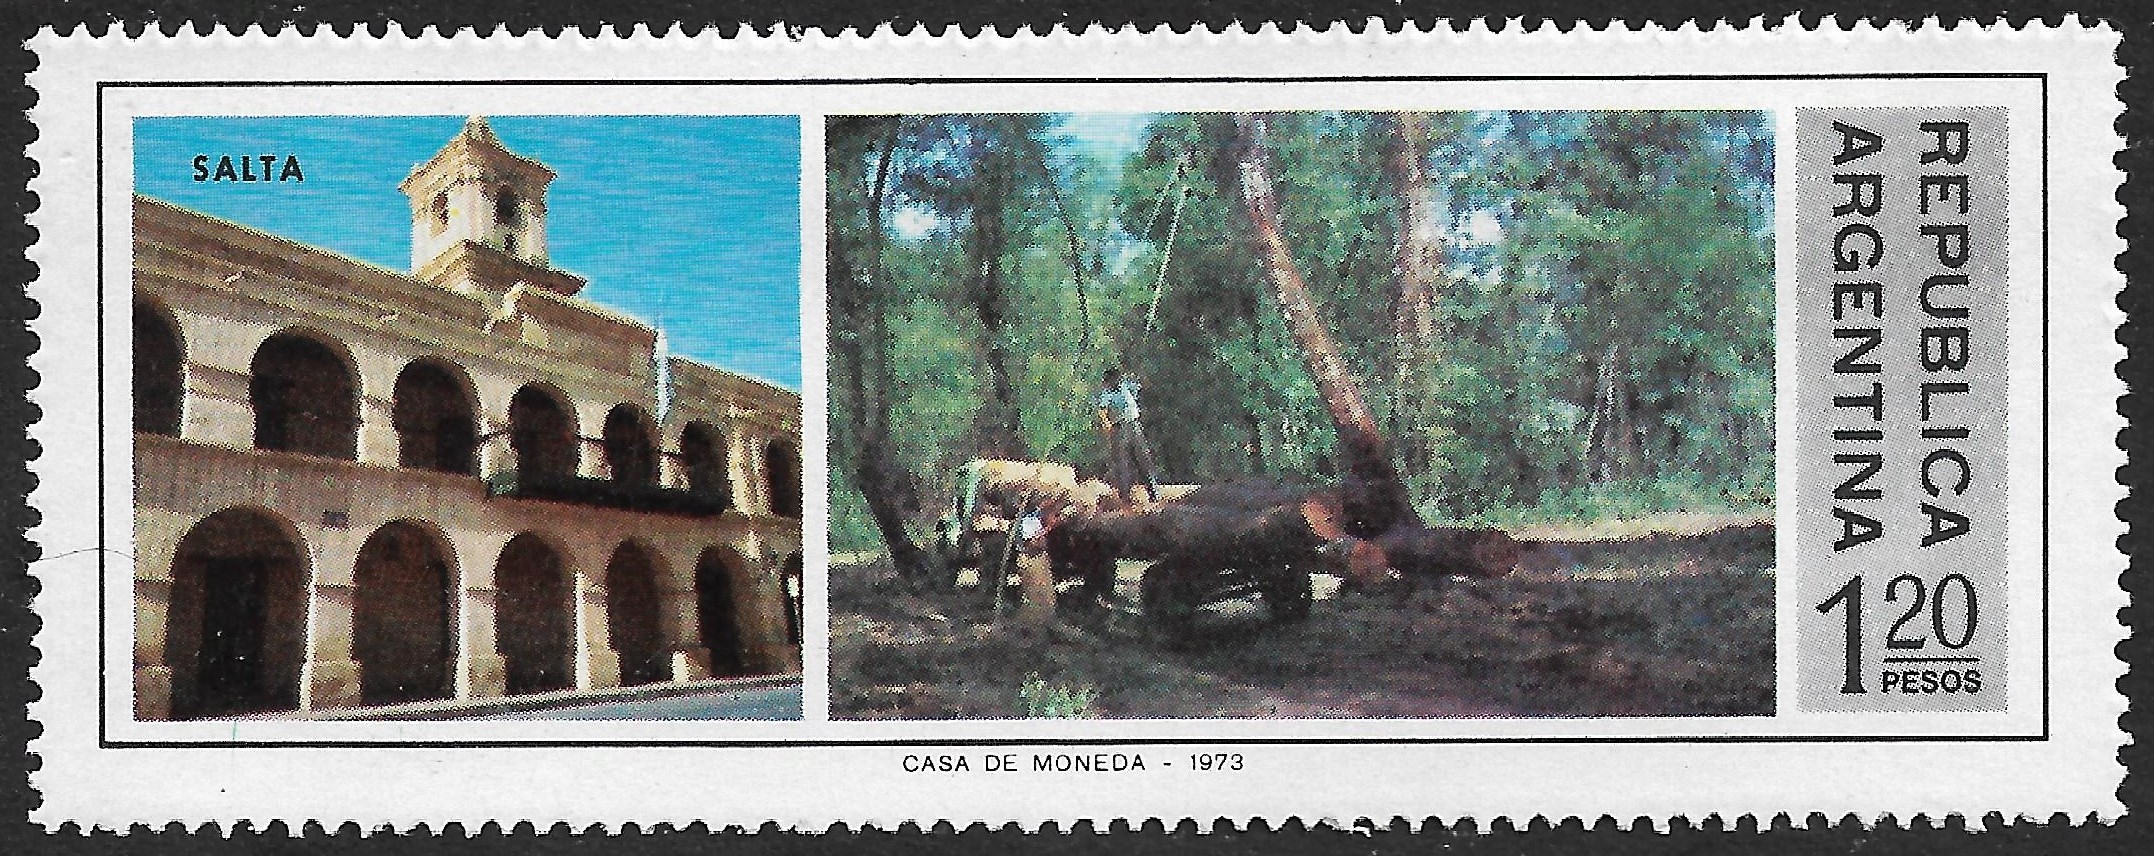 Provincias Argentinas - Salta - Emitido en el Año 1975